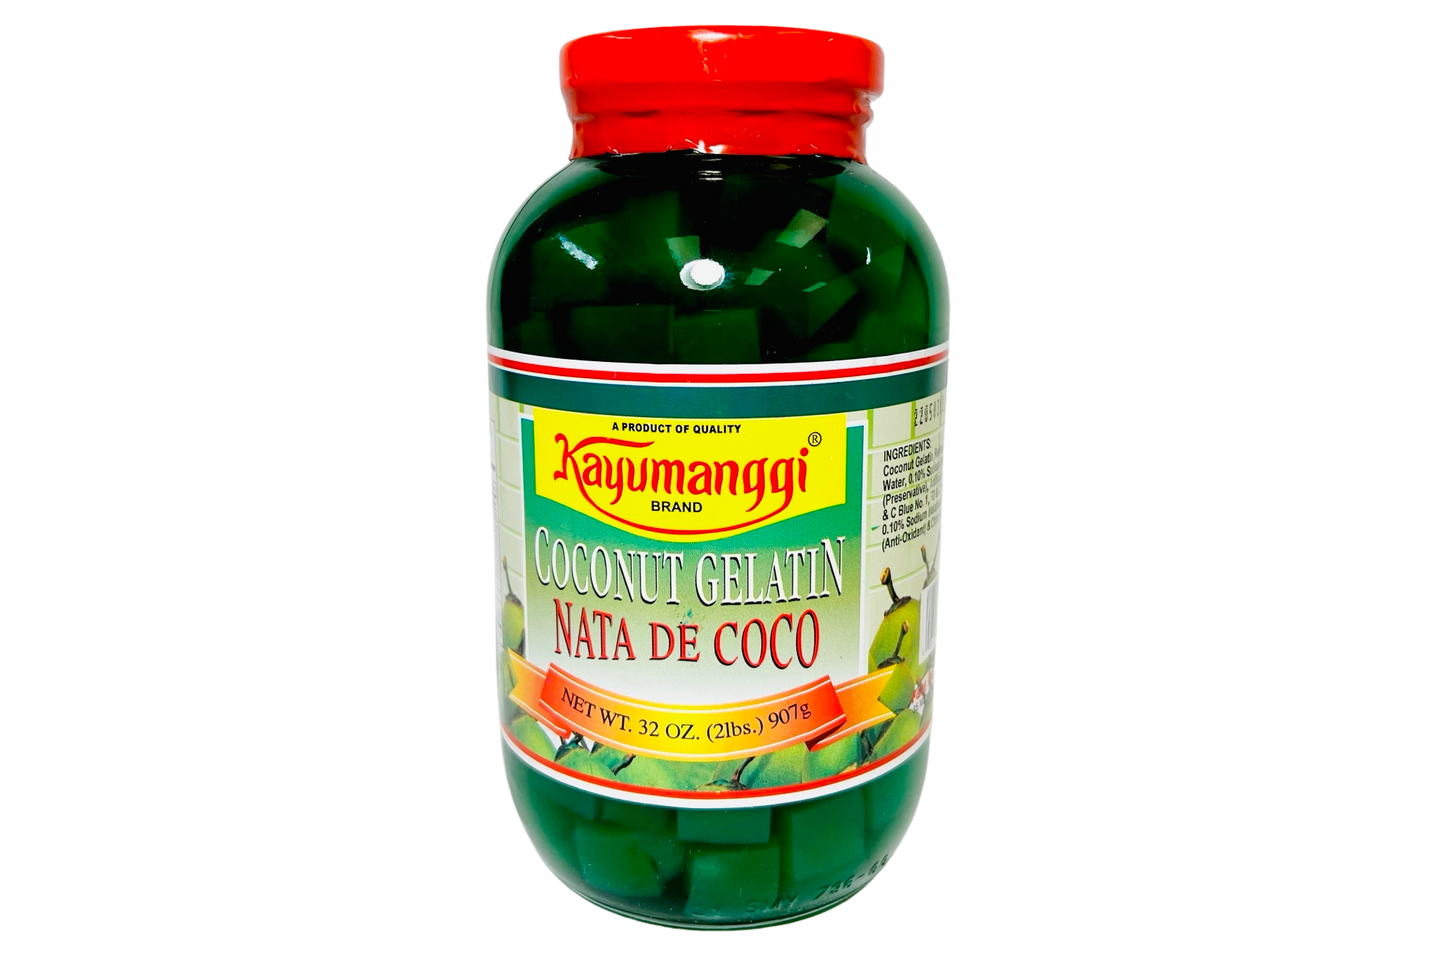 Kayumanggi Brand Coconut Gelatin Nata De Coco (Green) 907g